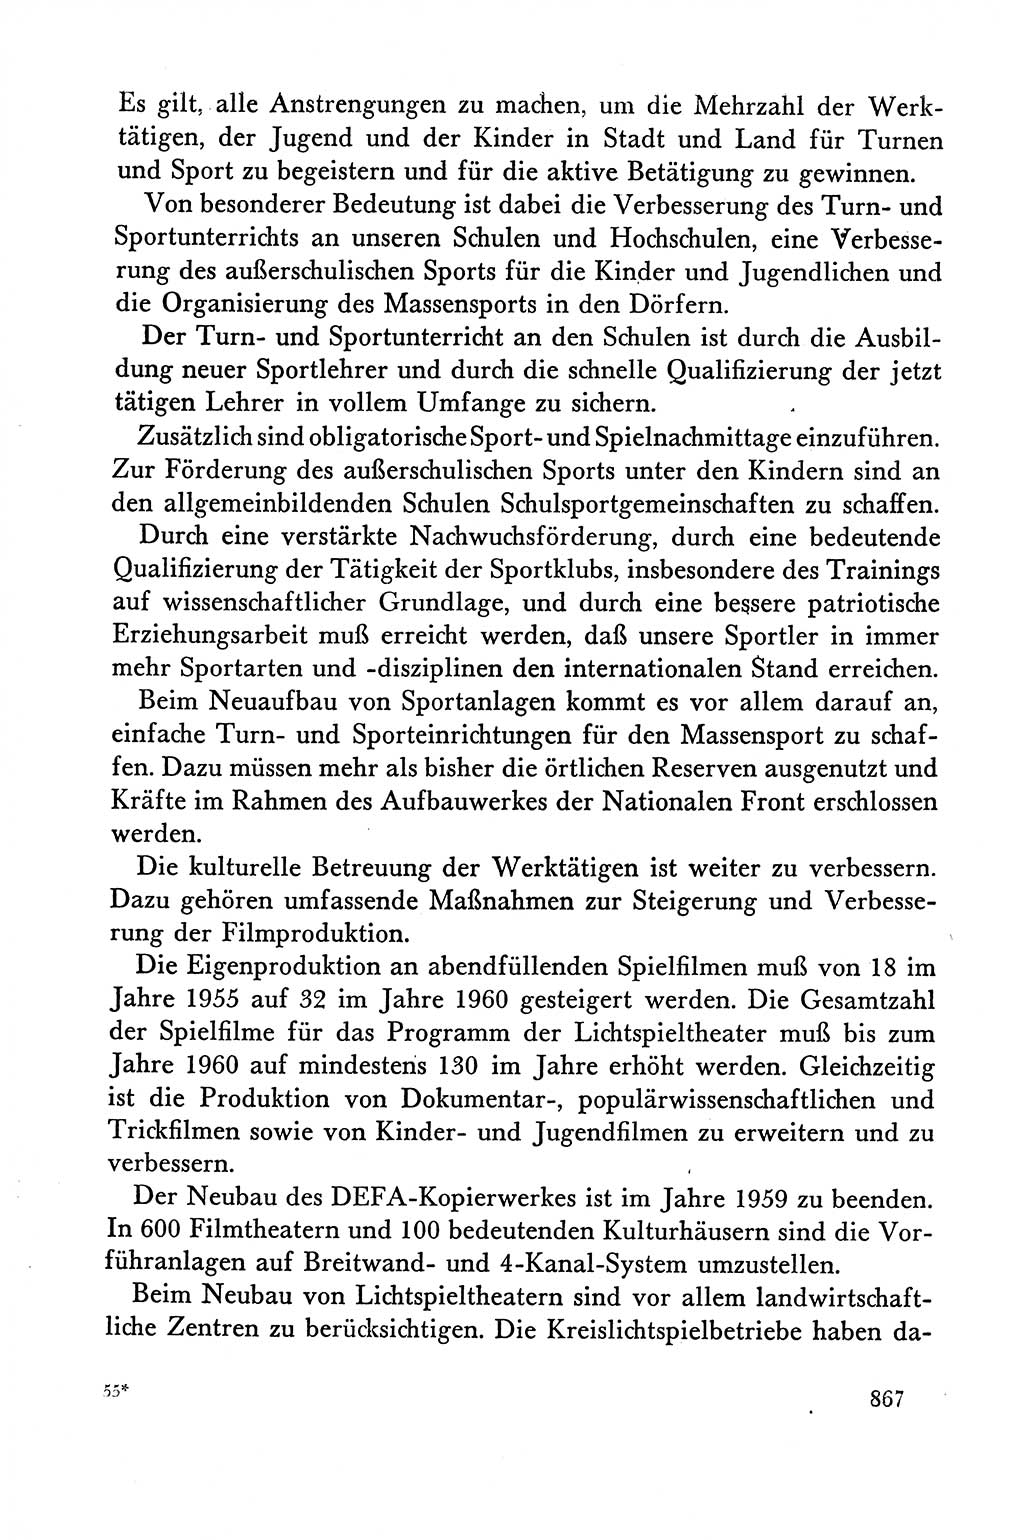 Dokumente der Sozialistischen Einheitspartei Deutschlands (SED) [Deutsche Demokratische Republik (DDR)] 1958-1959, Seite 867 (Dok. SED DDR 1958-1959, S. 867)